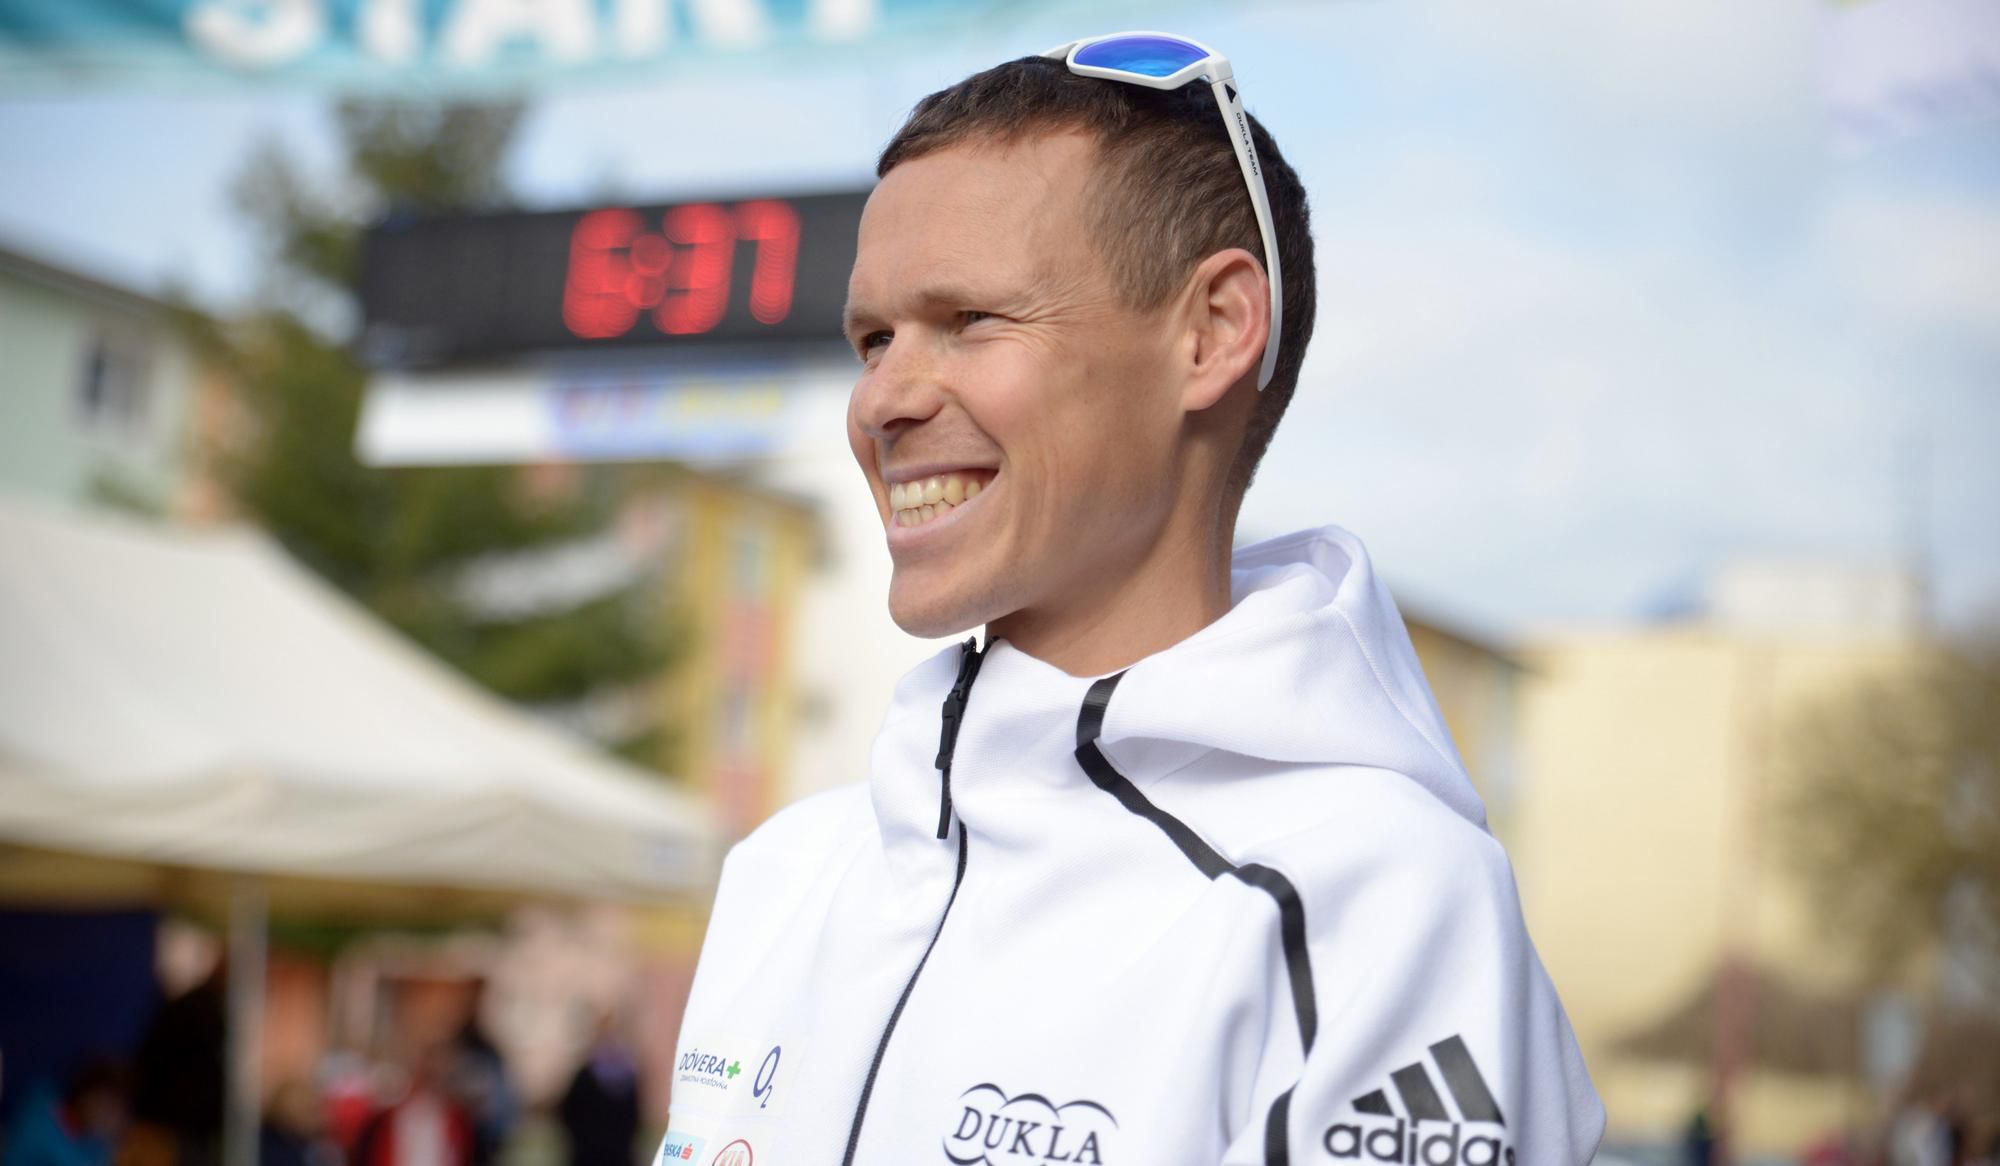 Olympijský víťaz z Ria de Janeiro 2016 v chôdzi Matej Tóth